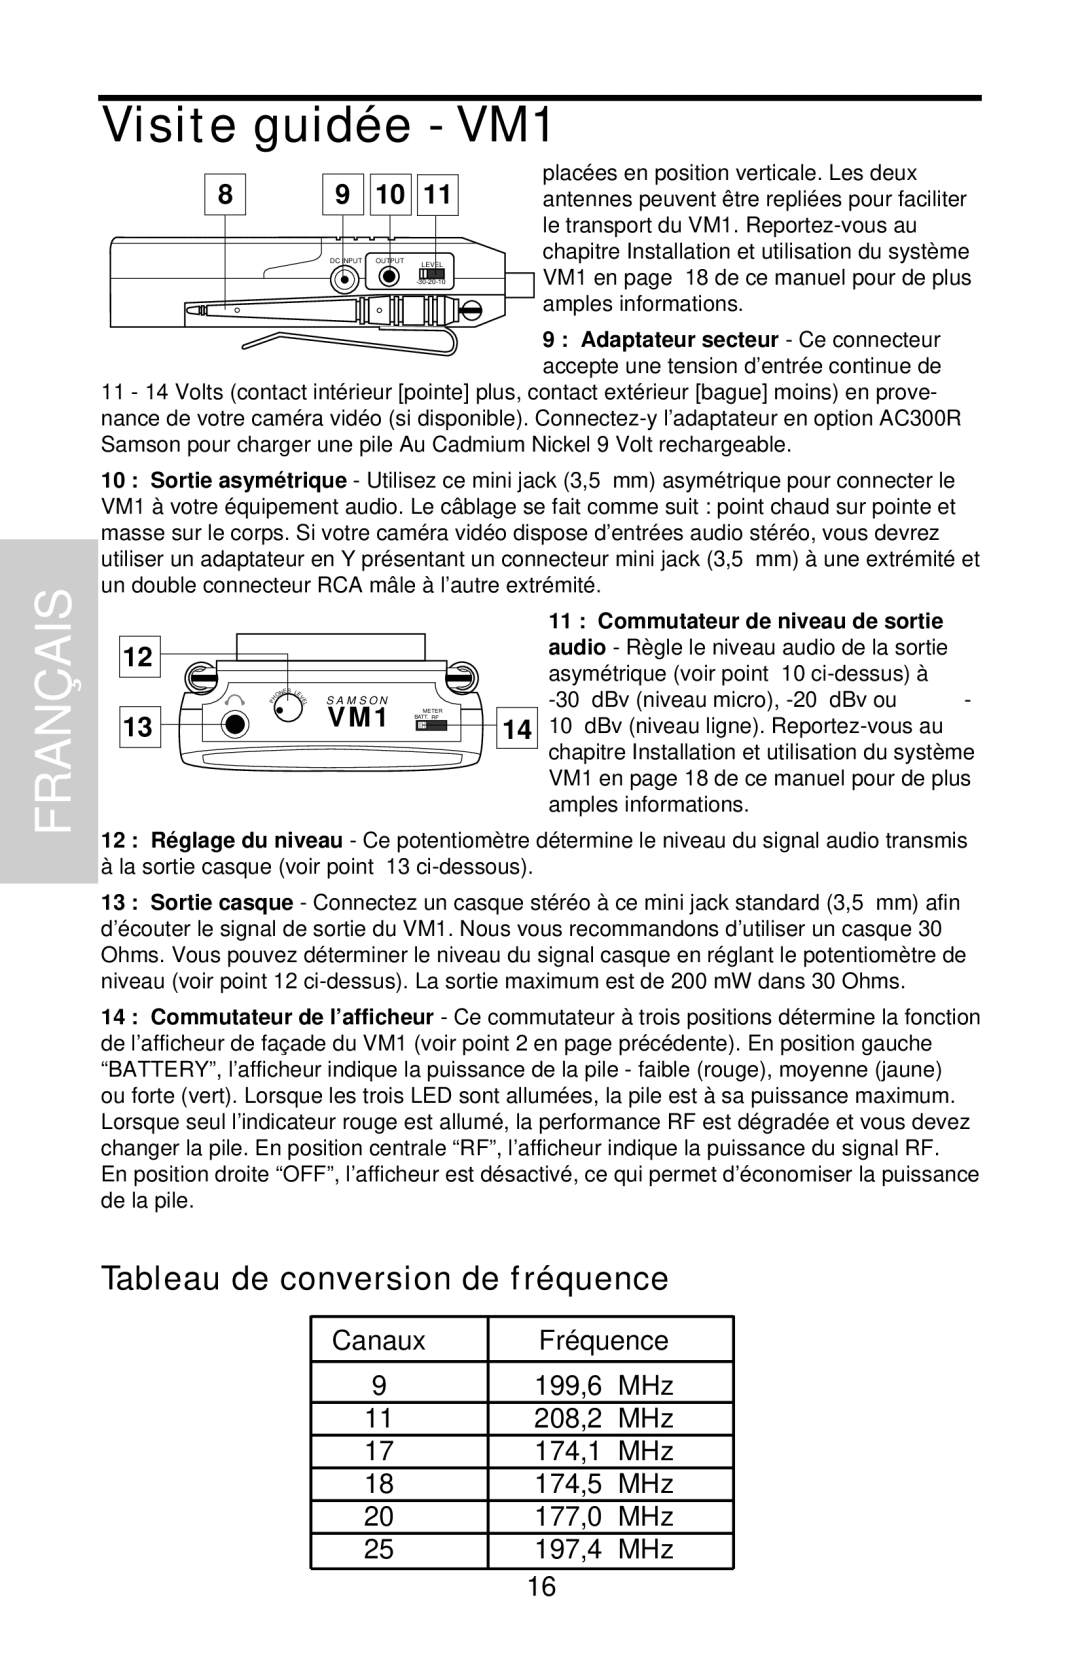 Samson VHF Micro TRUE DIVERSITY WIRELESS owner manual Tableau de conversion de fréquence, Visite guidée - VM1 